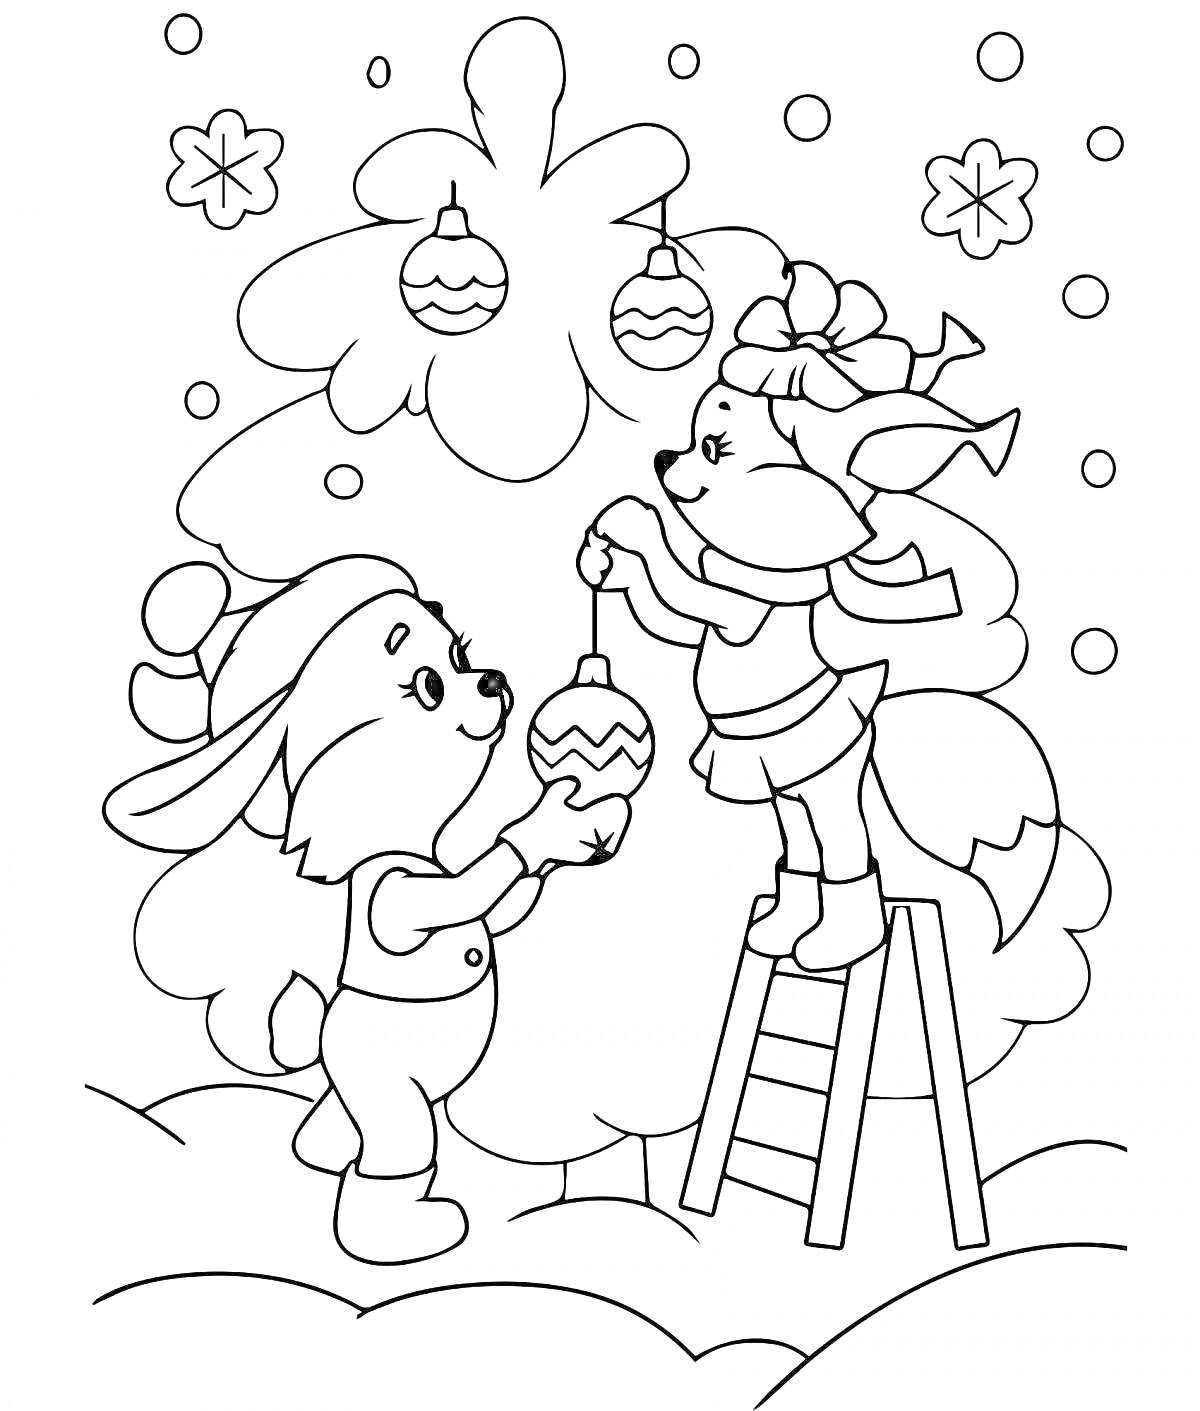 Лиса и заяц украшают новогоднюю елку